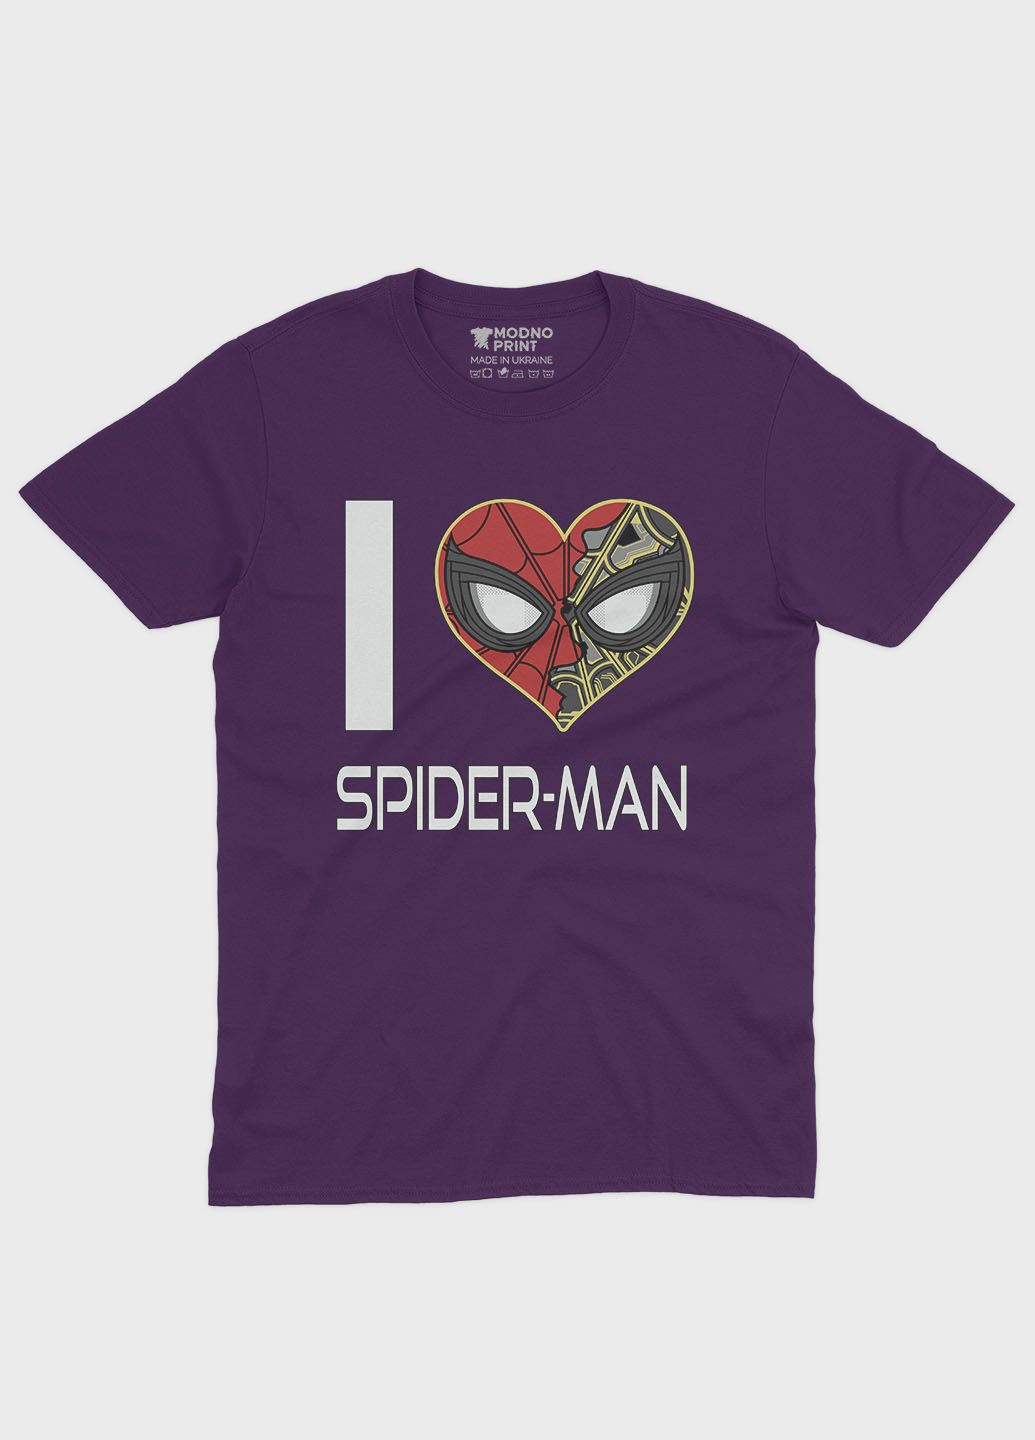 Фіолетова демісезонна футболка для дівчинки з принтом супергероя - людина-павук (ts001-1-dby-006-014-091-g) Modno